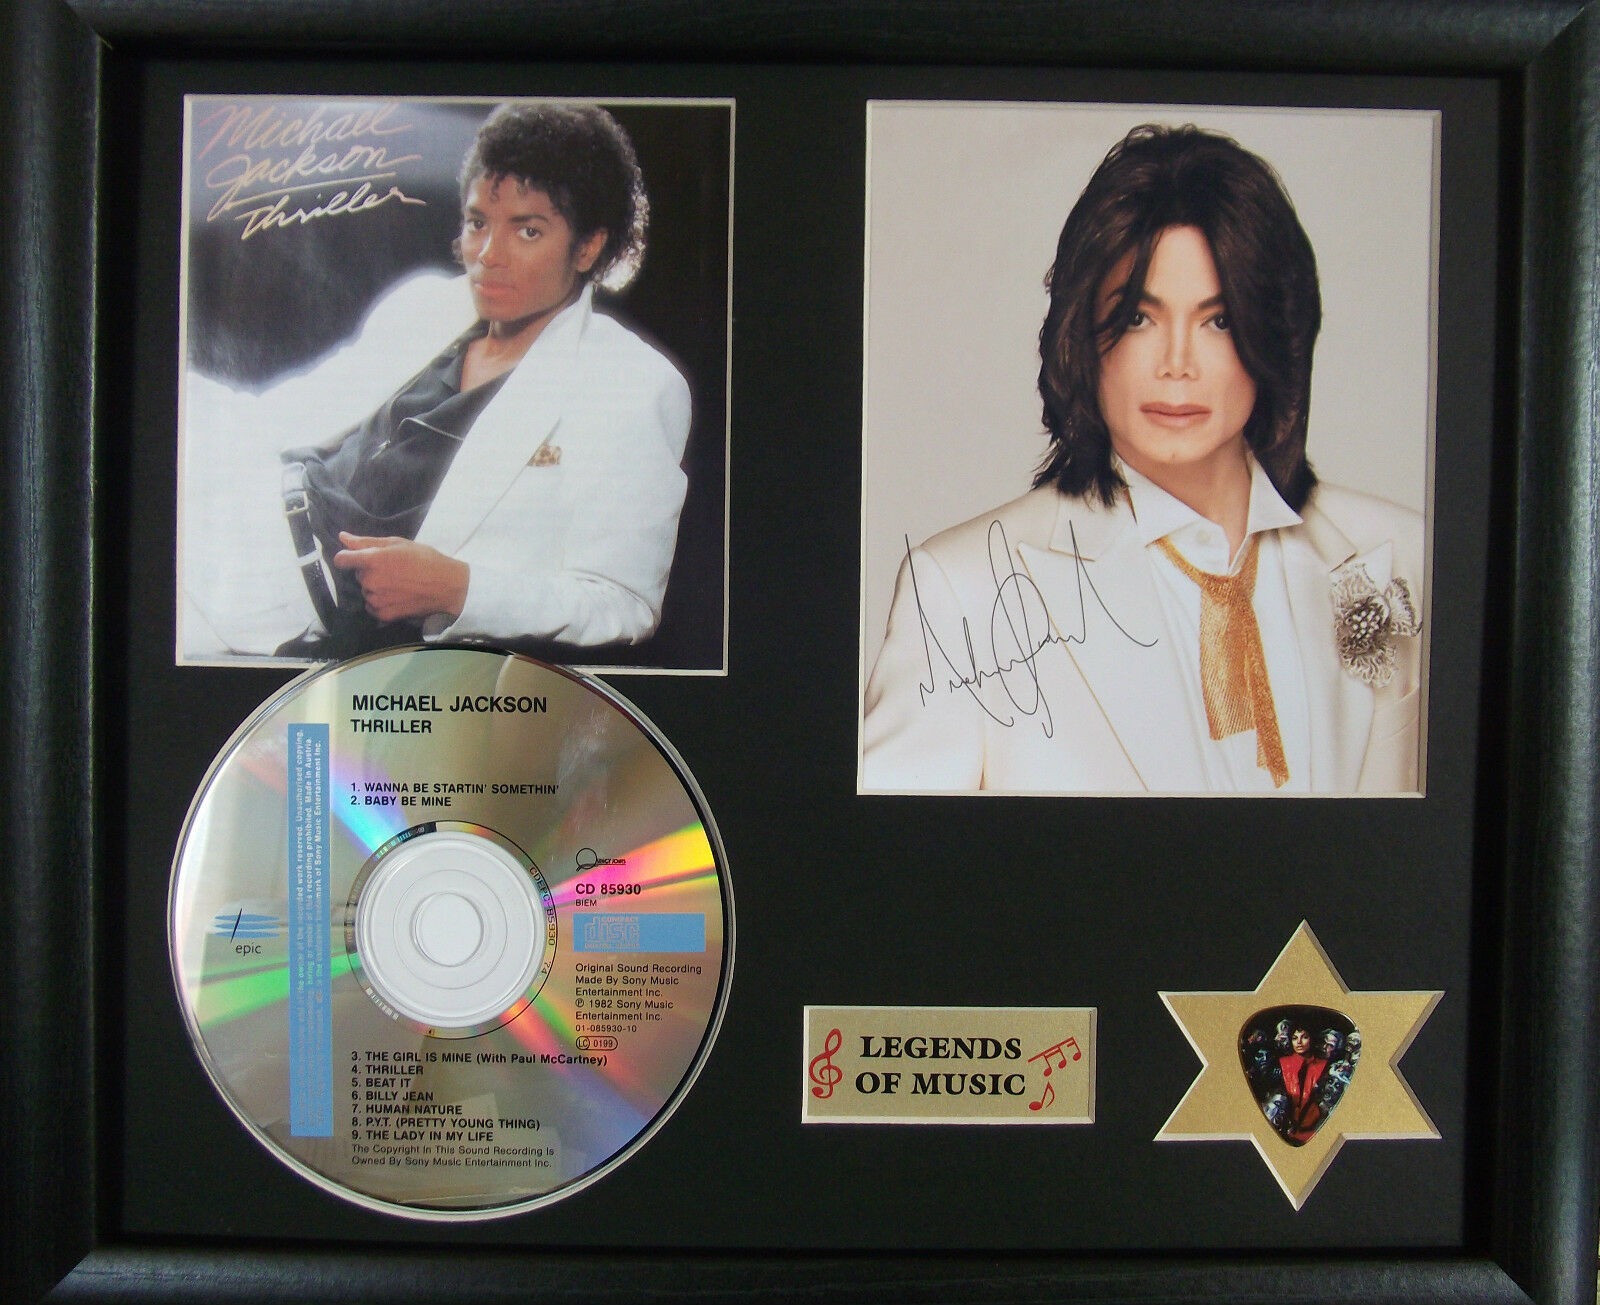 Foto met authentieke handtekening van Michael Jackson Thriller